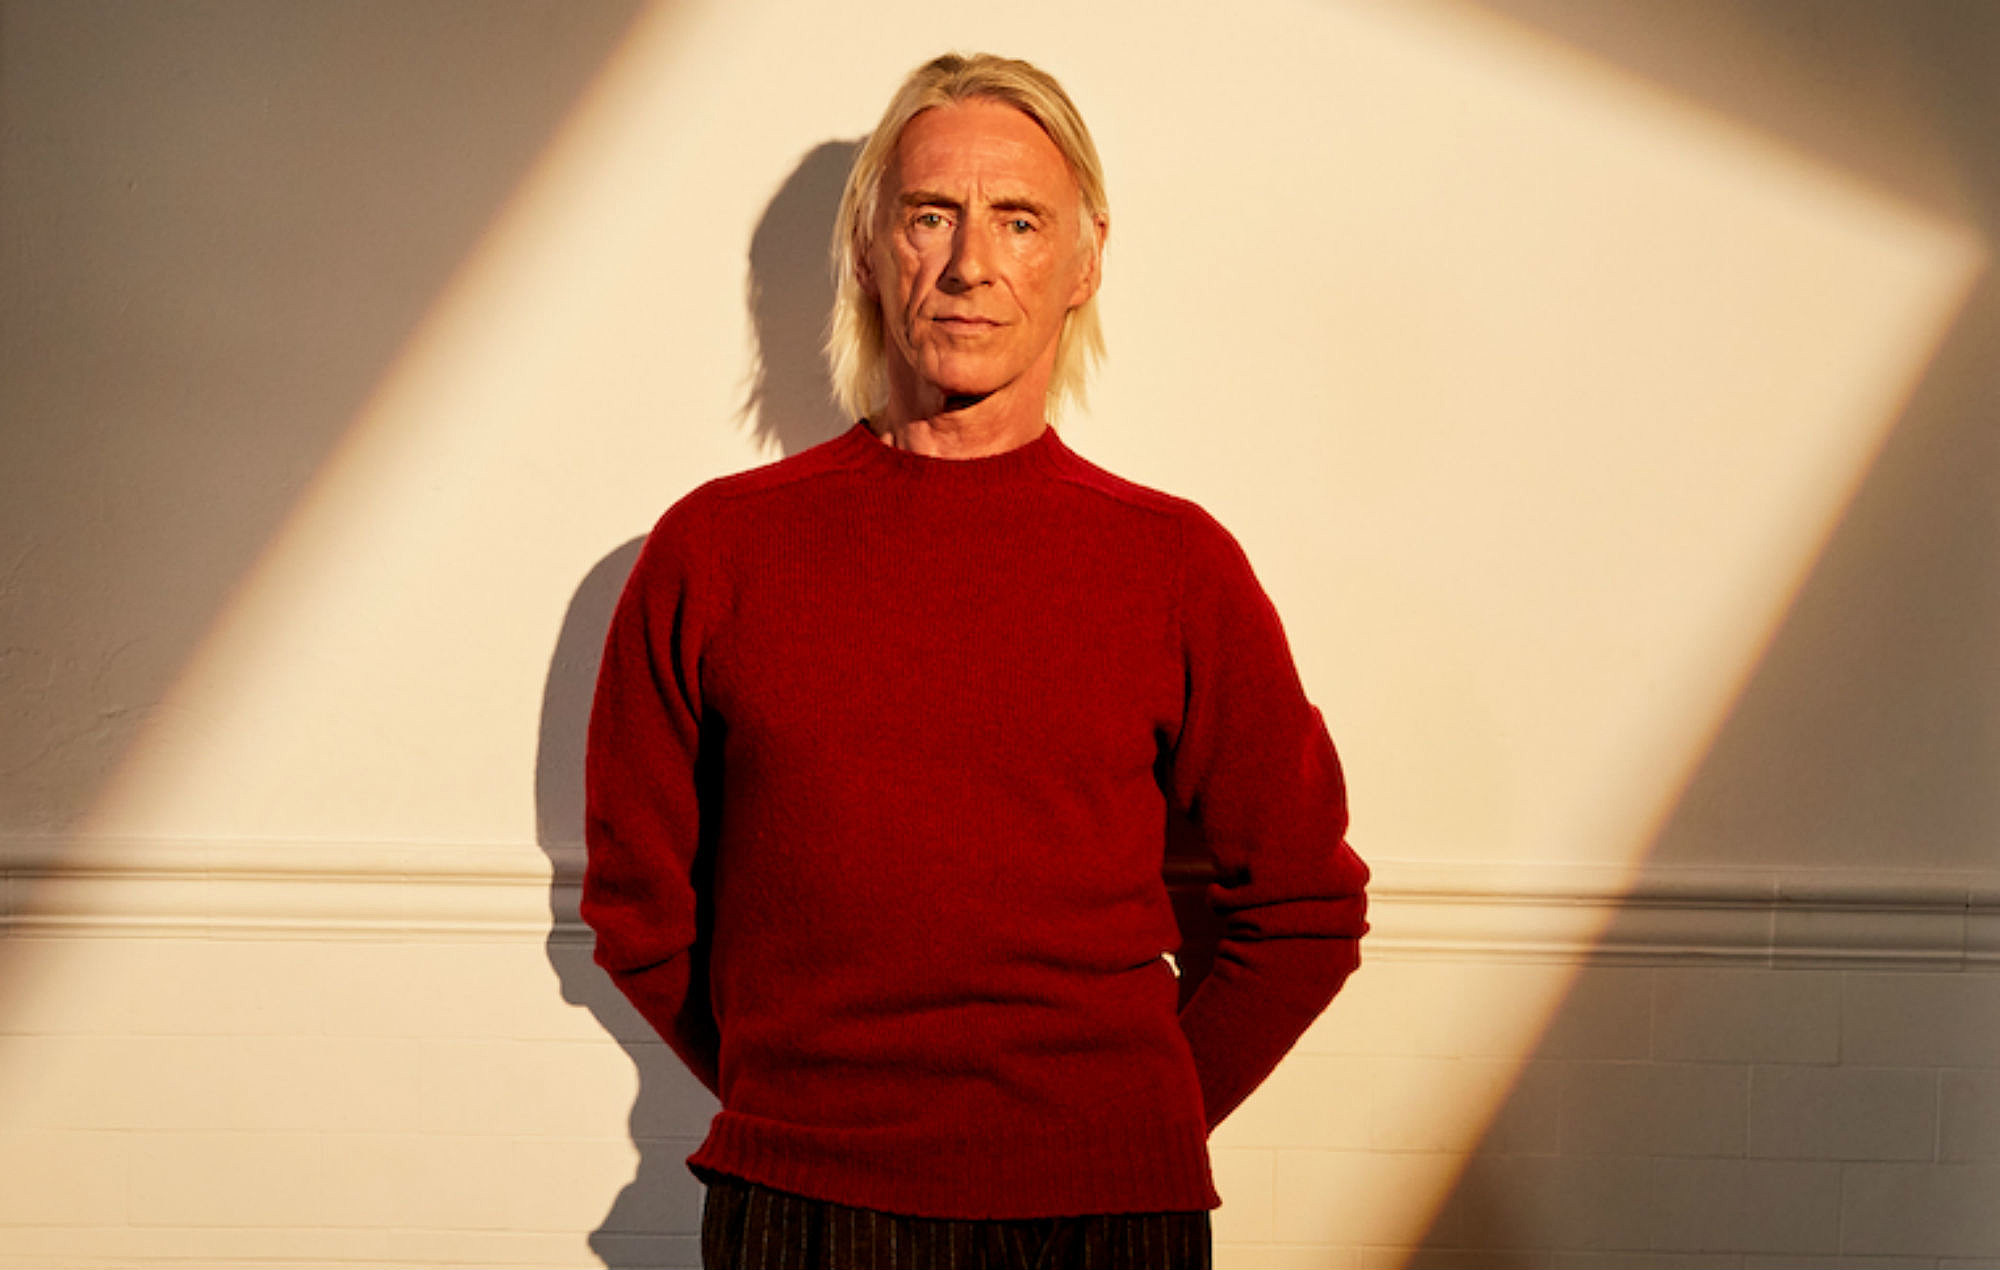 On sunset, l’album crépusculaire et flamboyant de Paul Weller